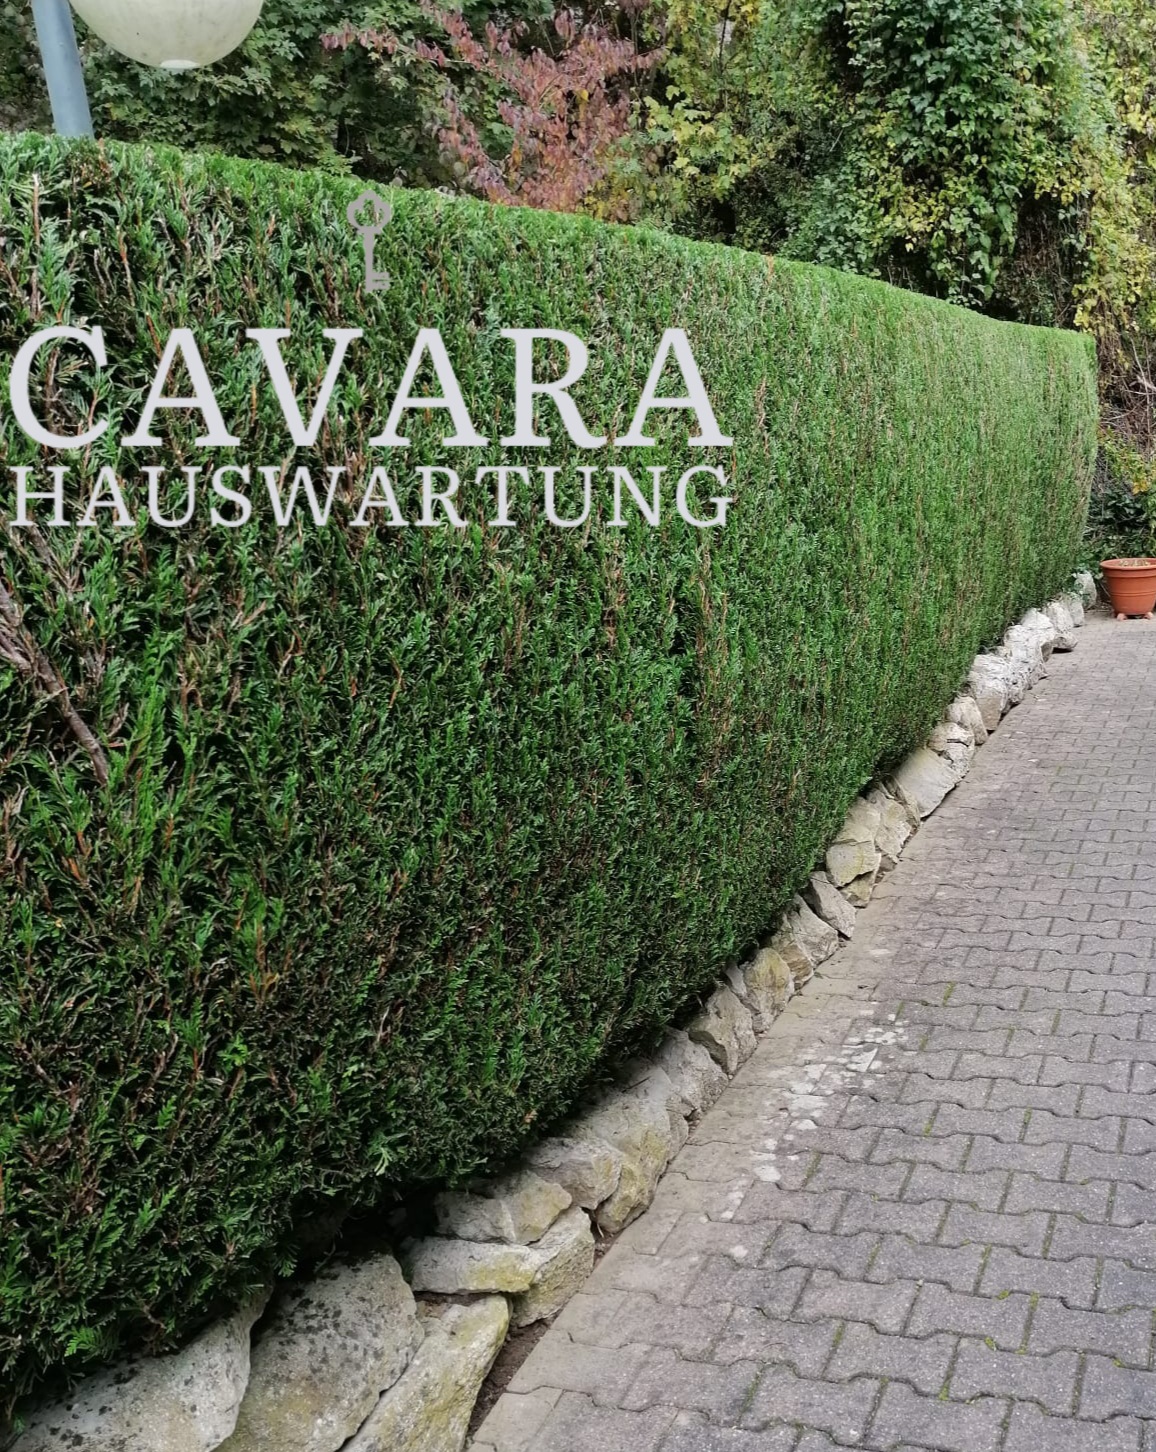 (c) Cavara-hauswartung.ch